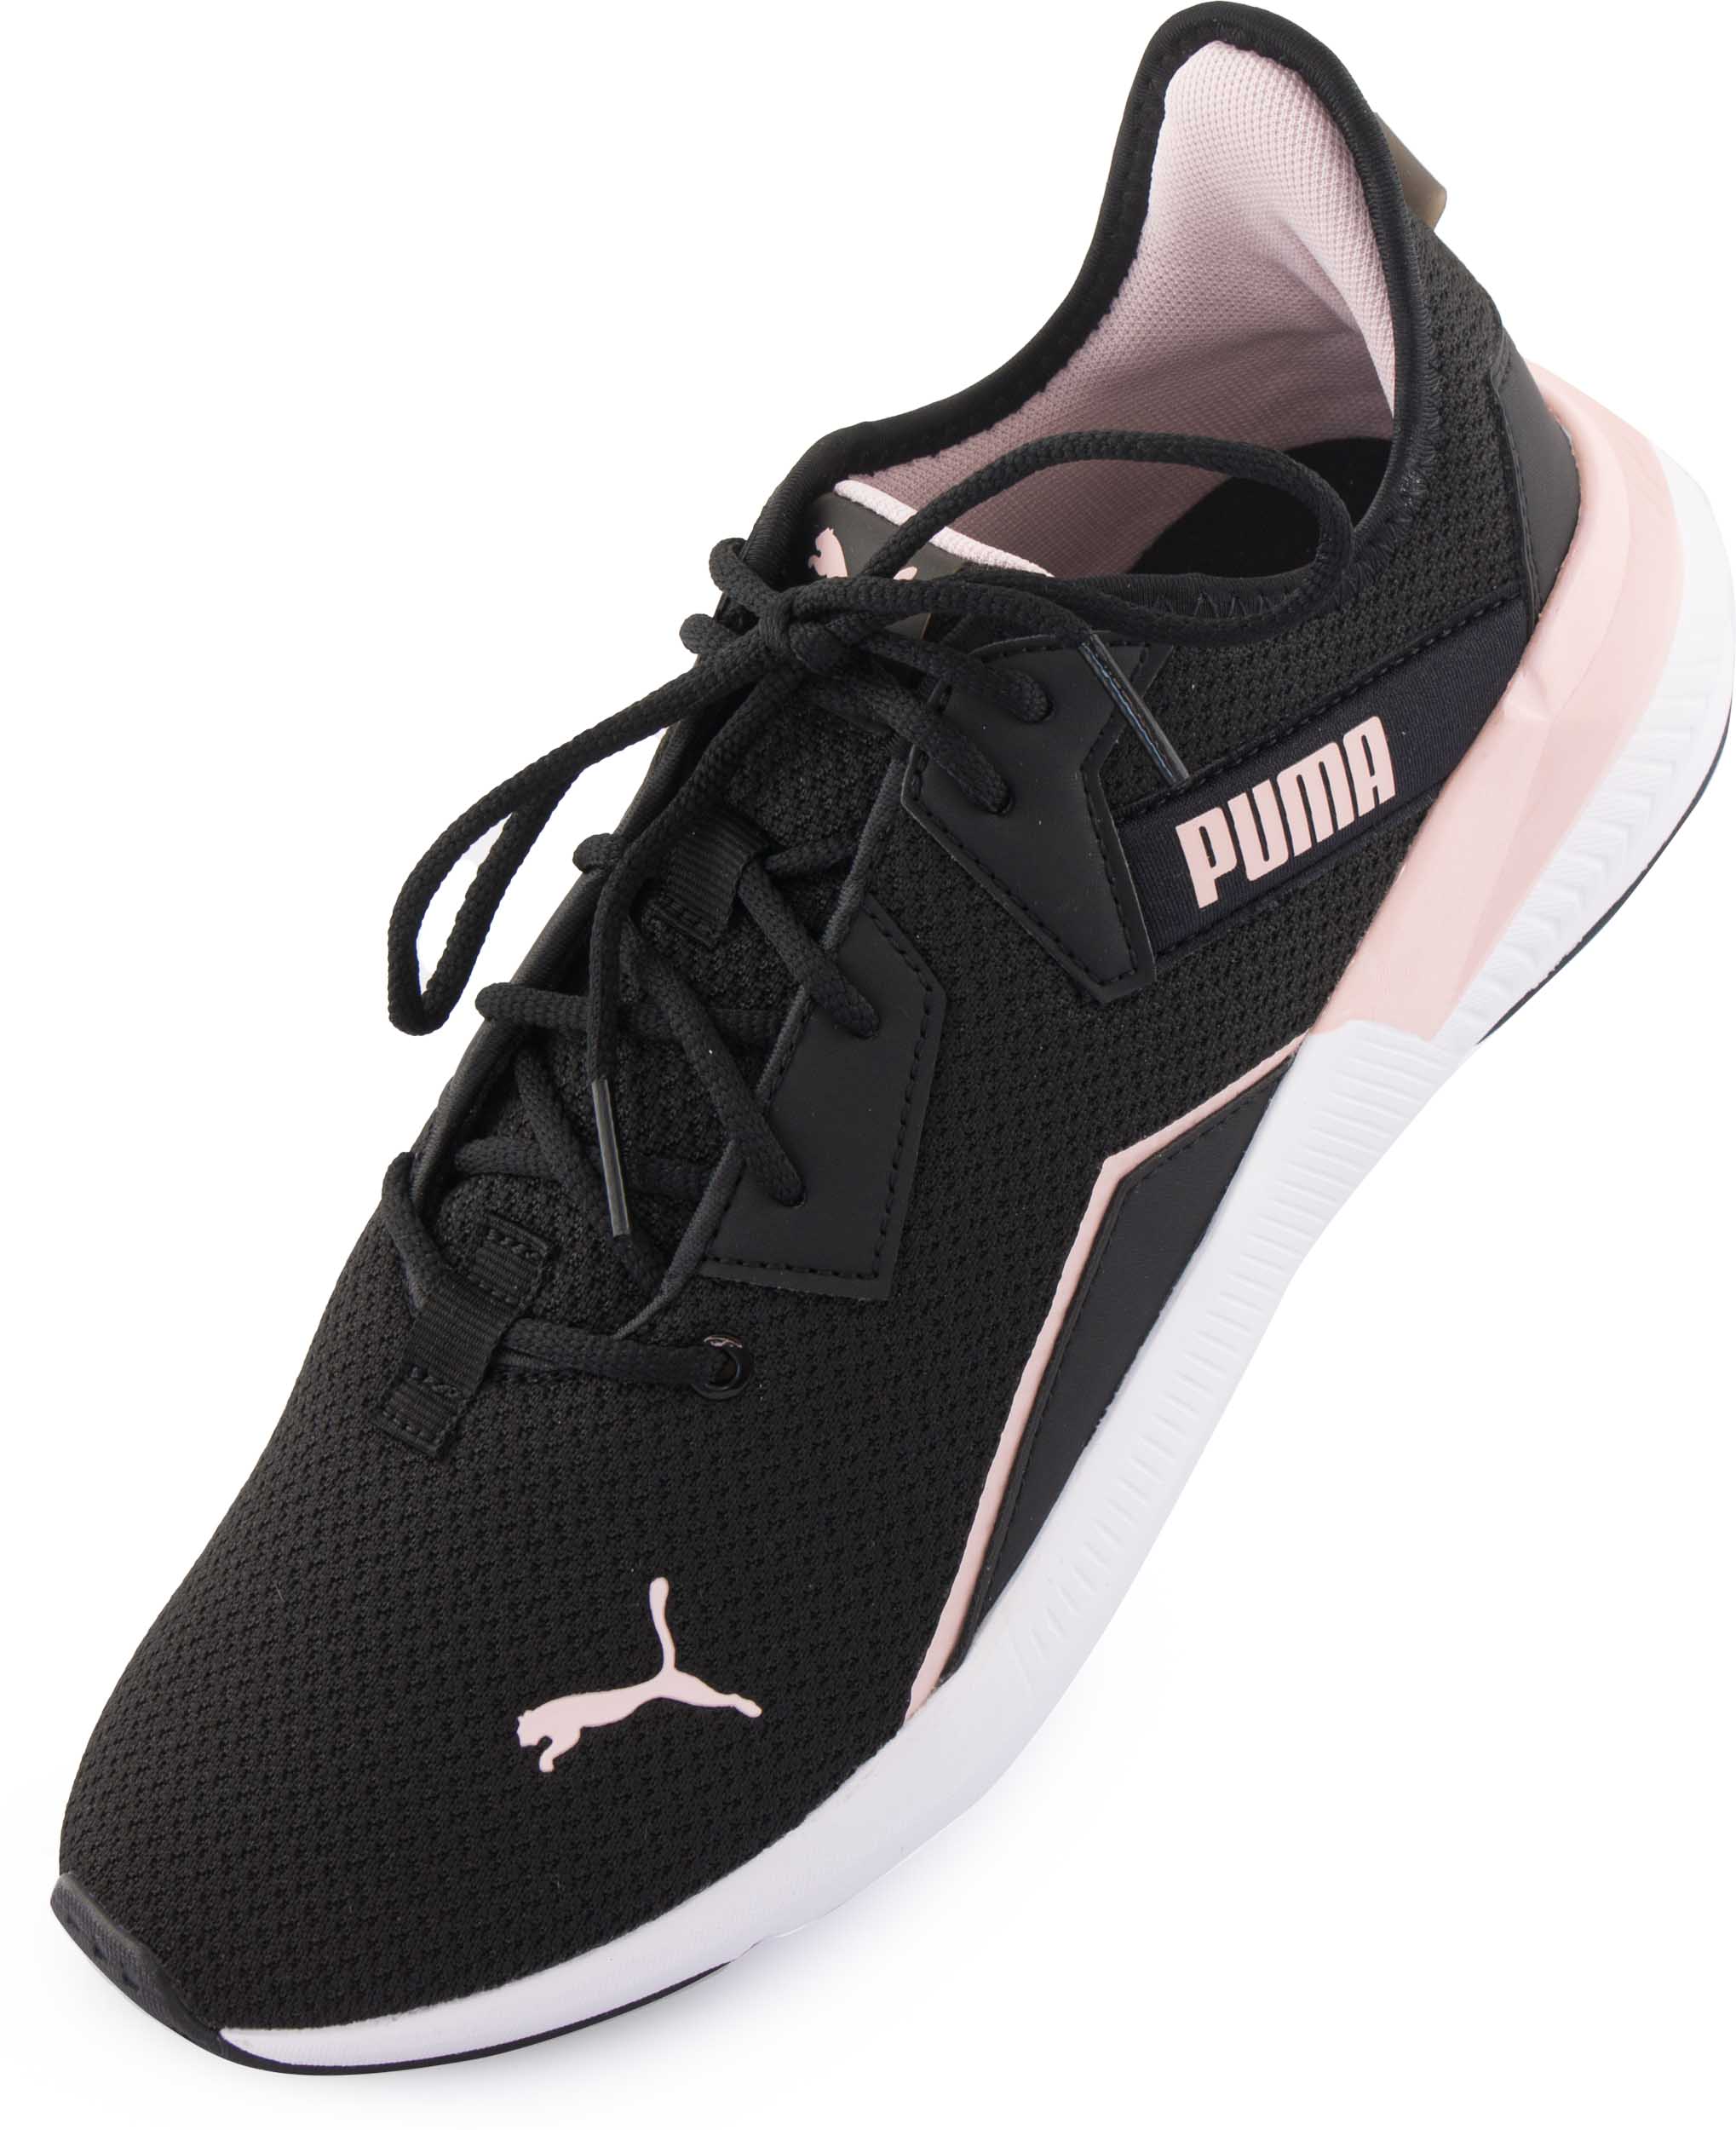 Dámské sportovní boty Puma Wms Platinum Shimmer Black Lotus|42,5